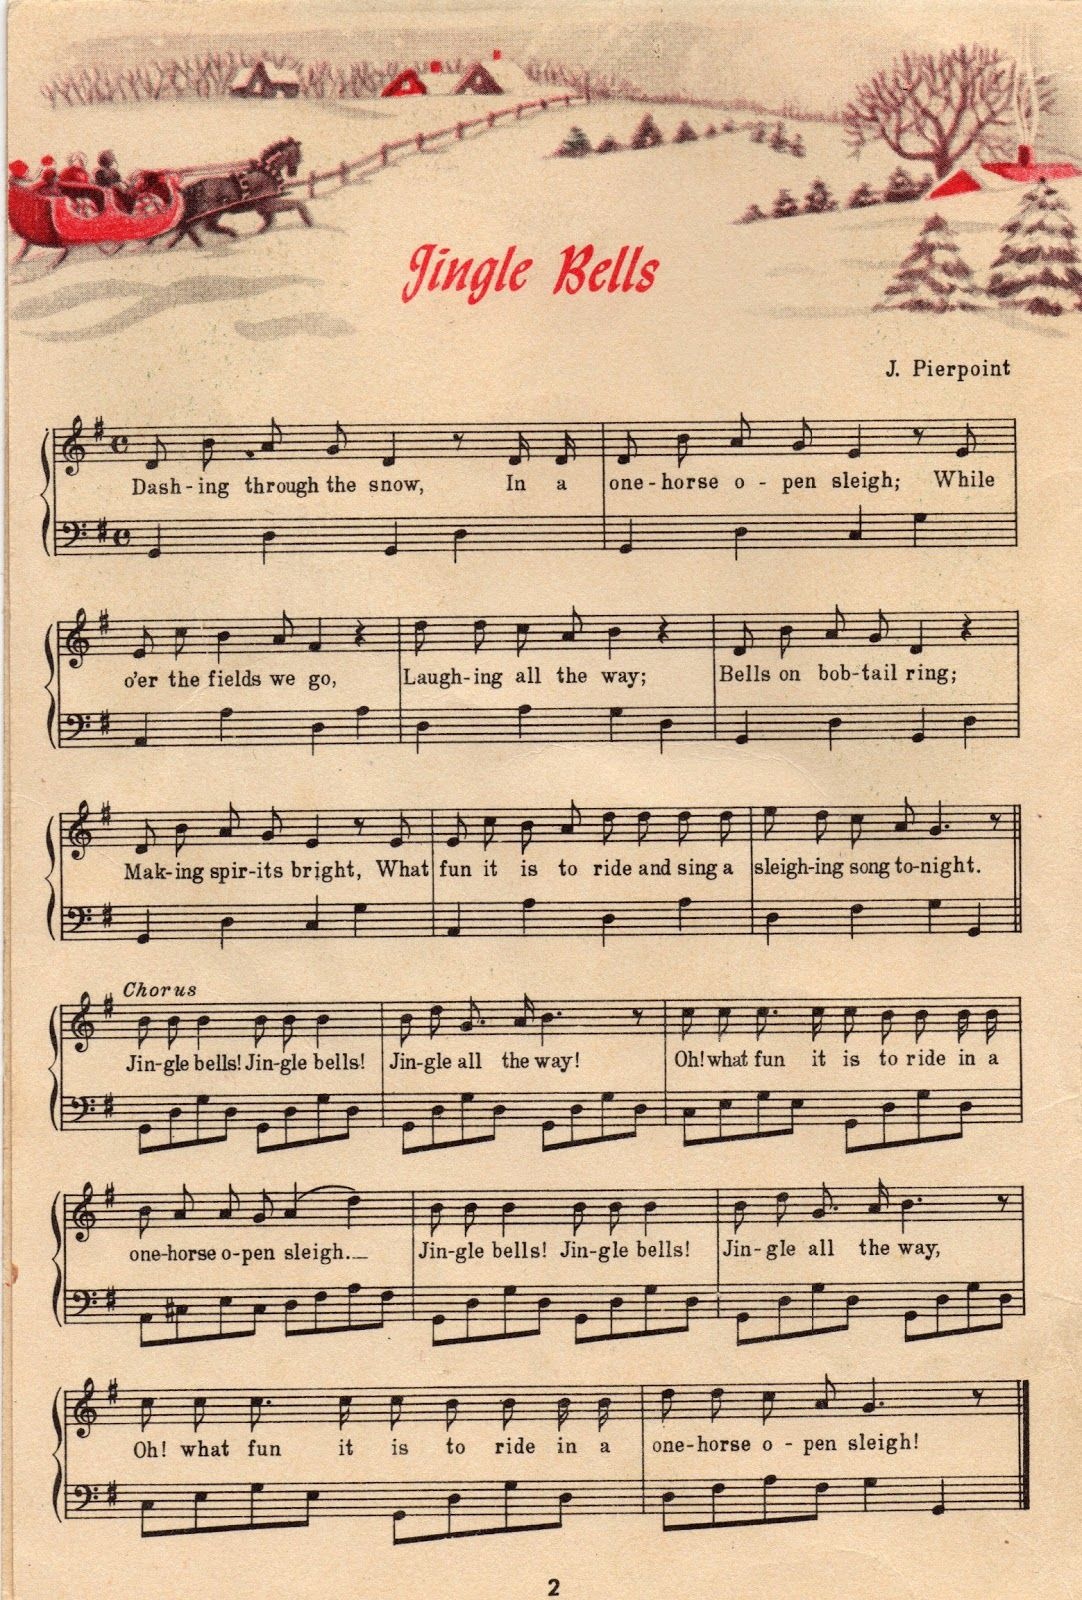 25+ Free Printable Vintage Christmas Sheet Music | Christmas Ideas - Christmas Carols Sheet Music Free Printable